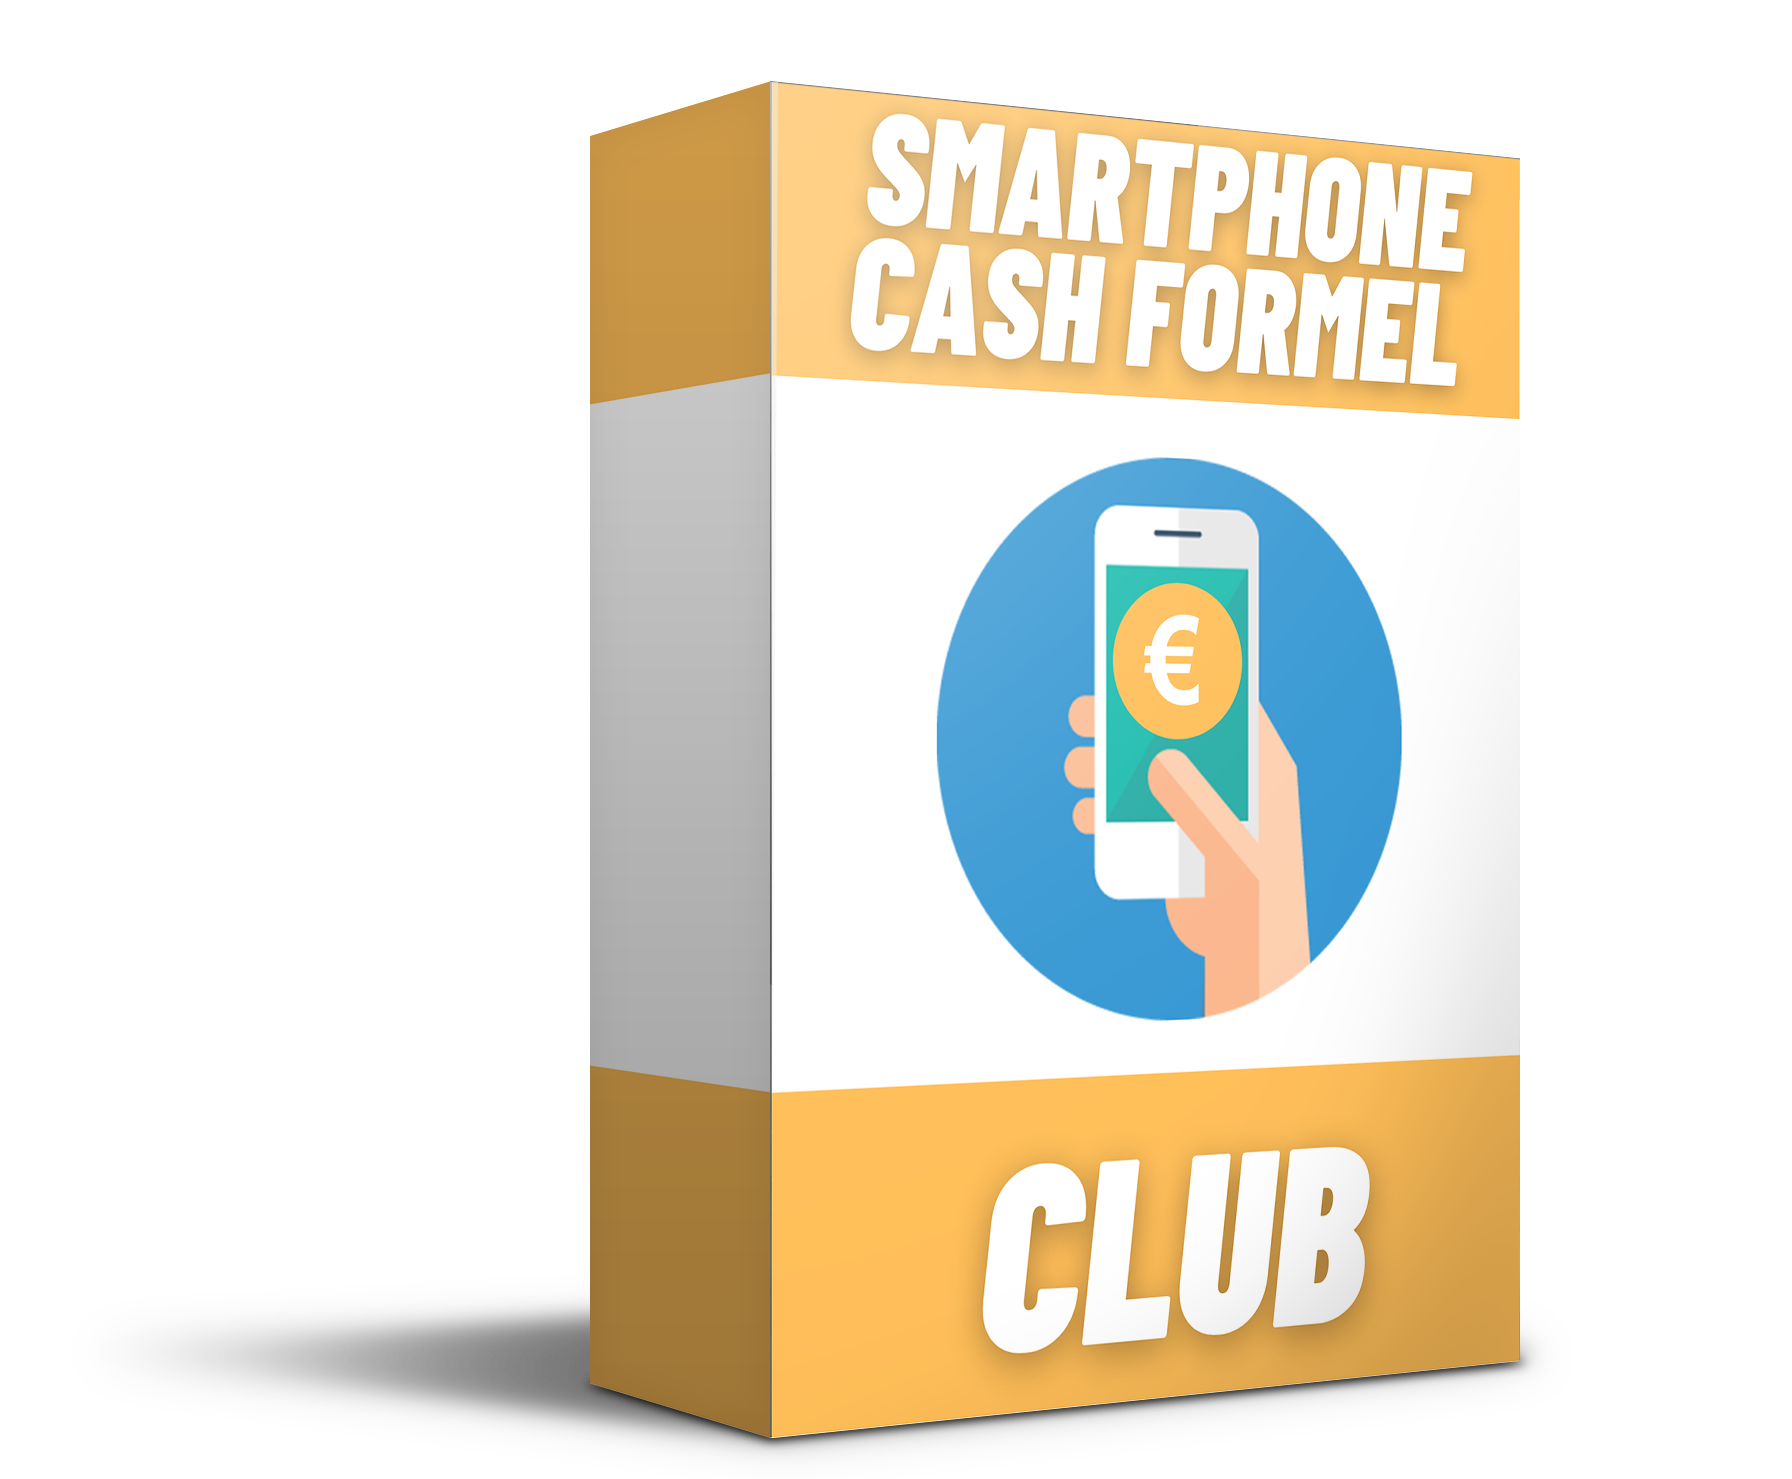 Smartphone Cash Formel Club Kursinhalt funktioniert und es lohnt sich ist gut